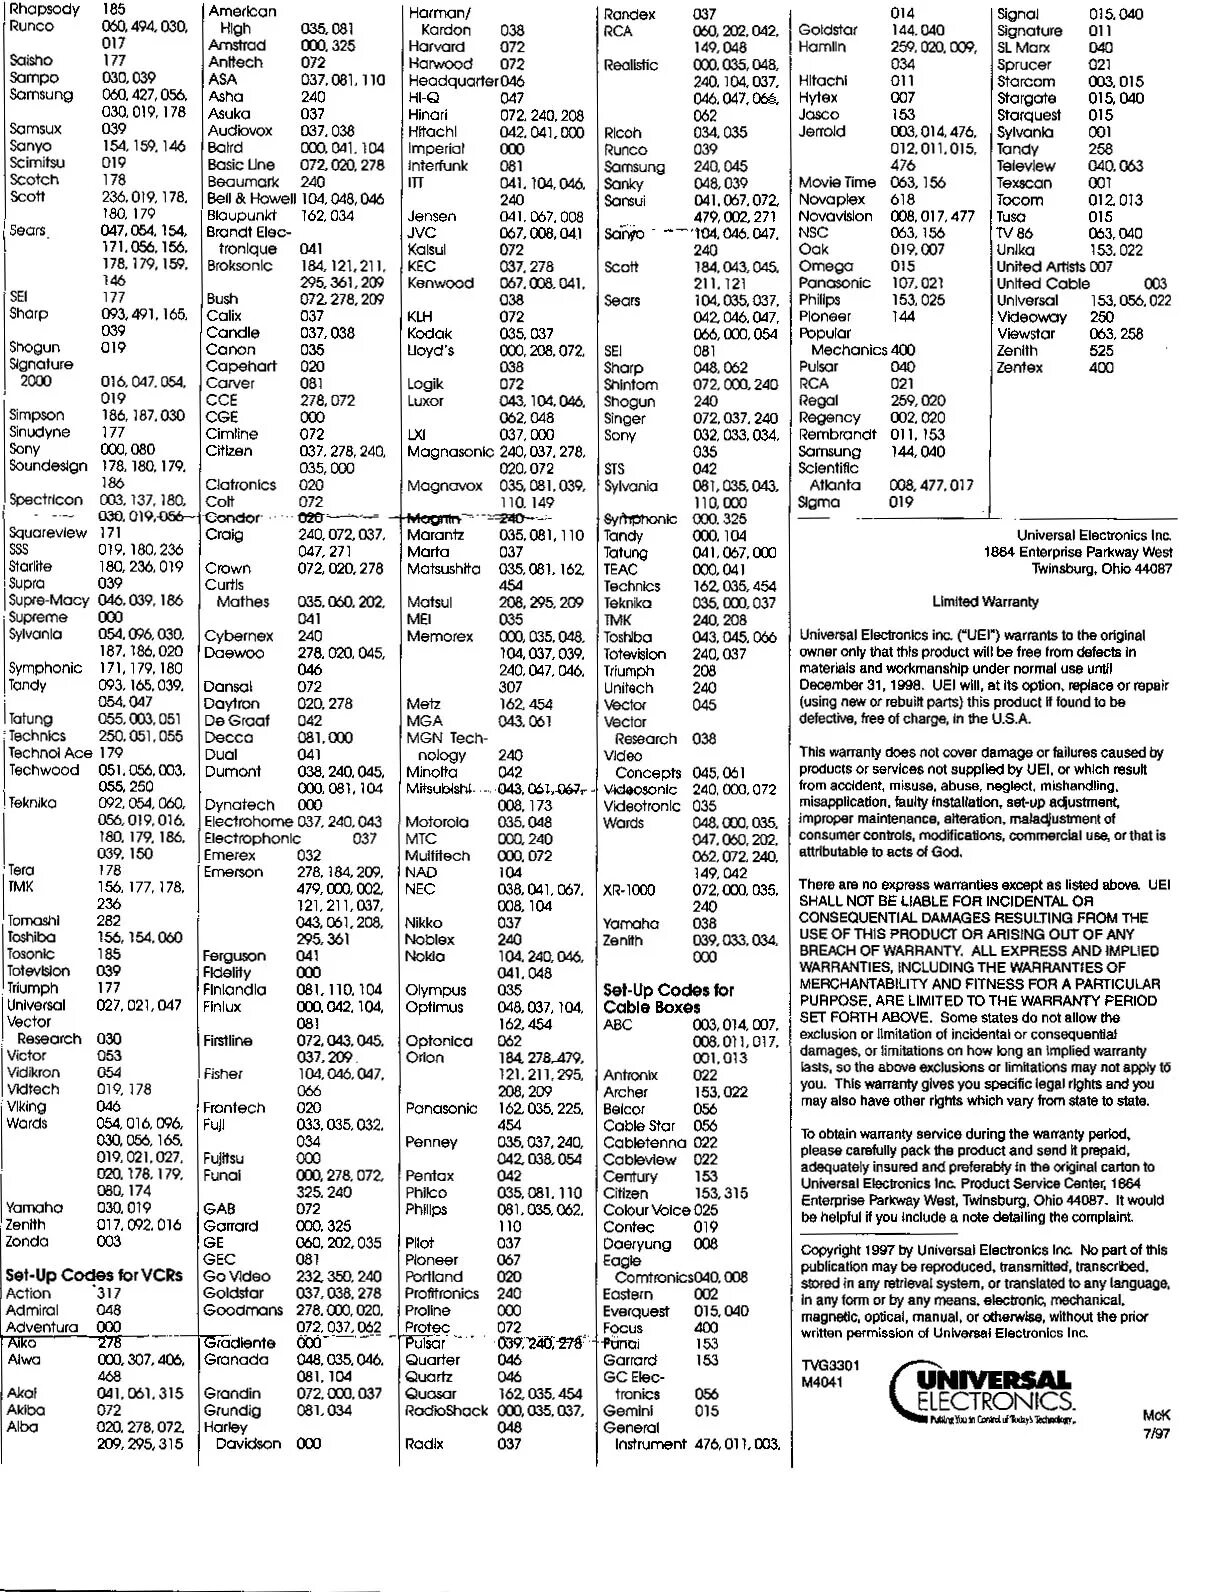 Код для телевизора. Таблица кодов для универсальных пультов телевизоров LG. Таблица кодов для универсальных пультов телевизоров Samsung. Коды для универсальных пультов для телевизора LG. Таблица кодов для универсальных пультов.